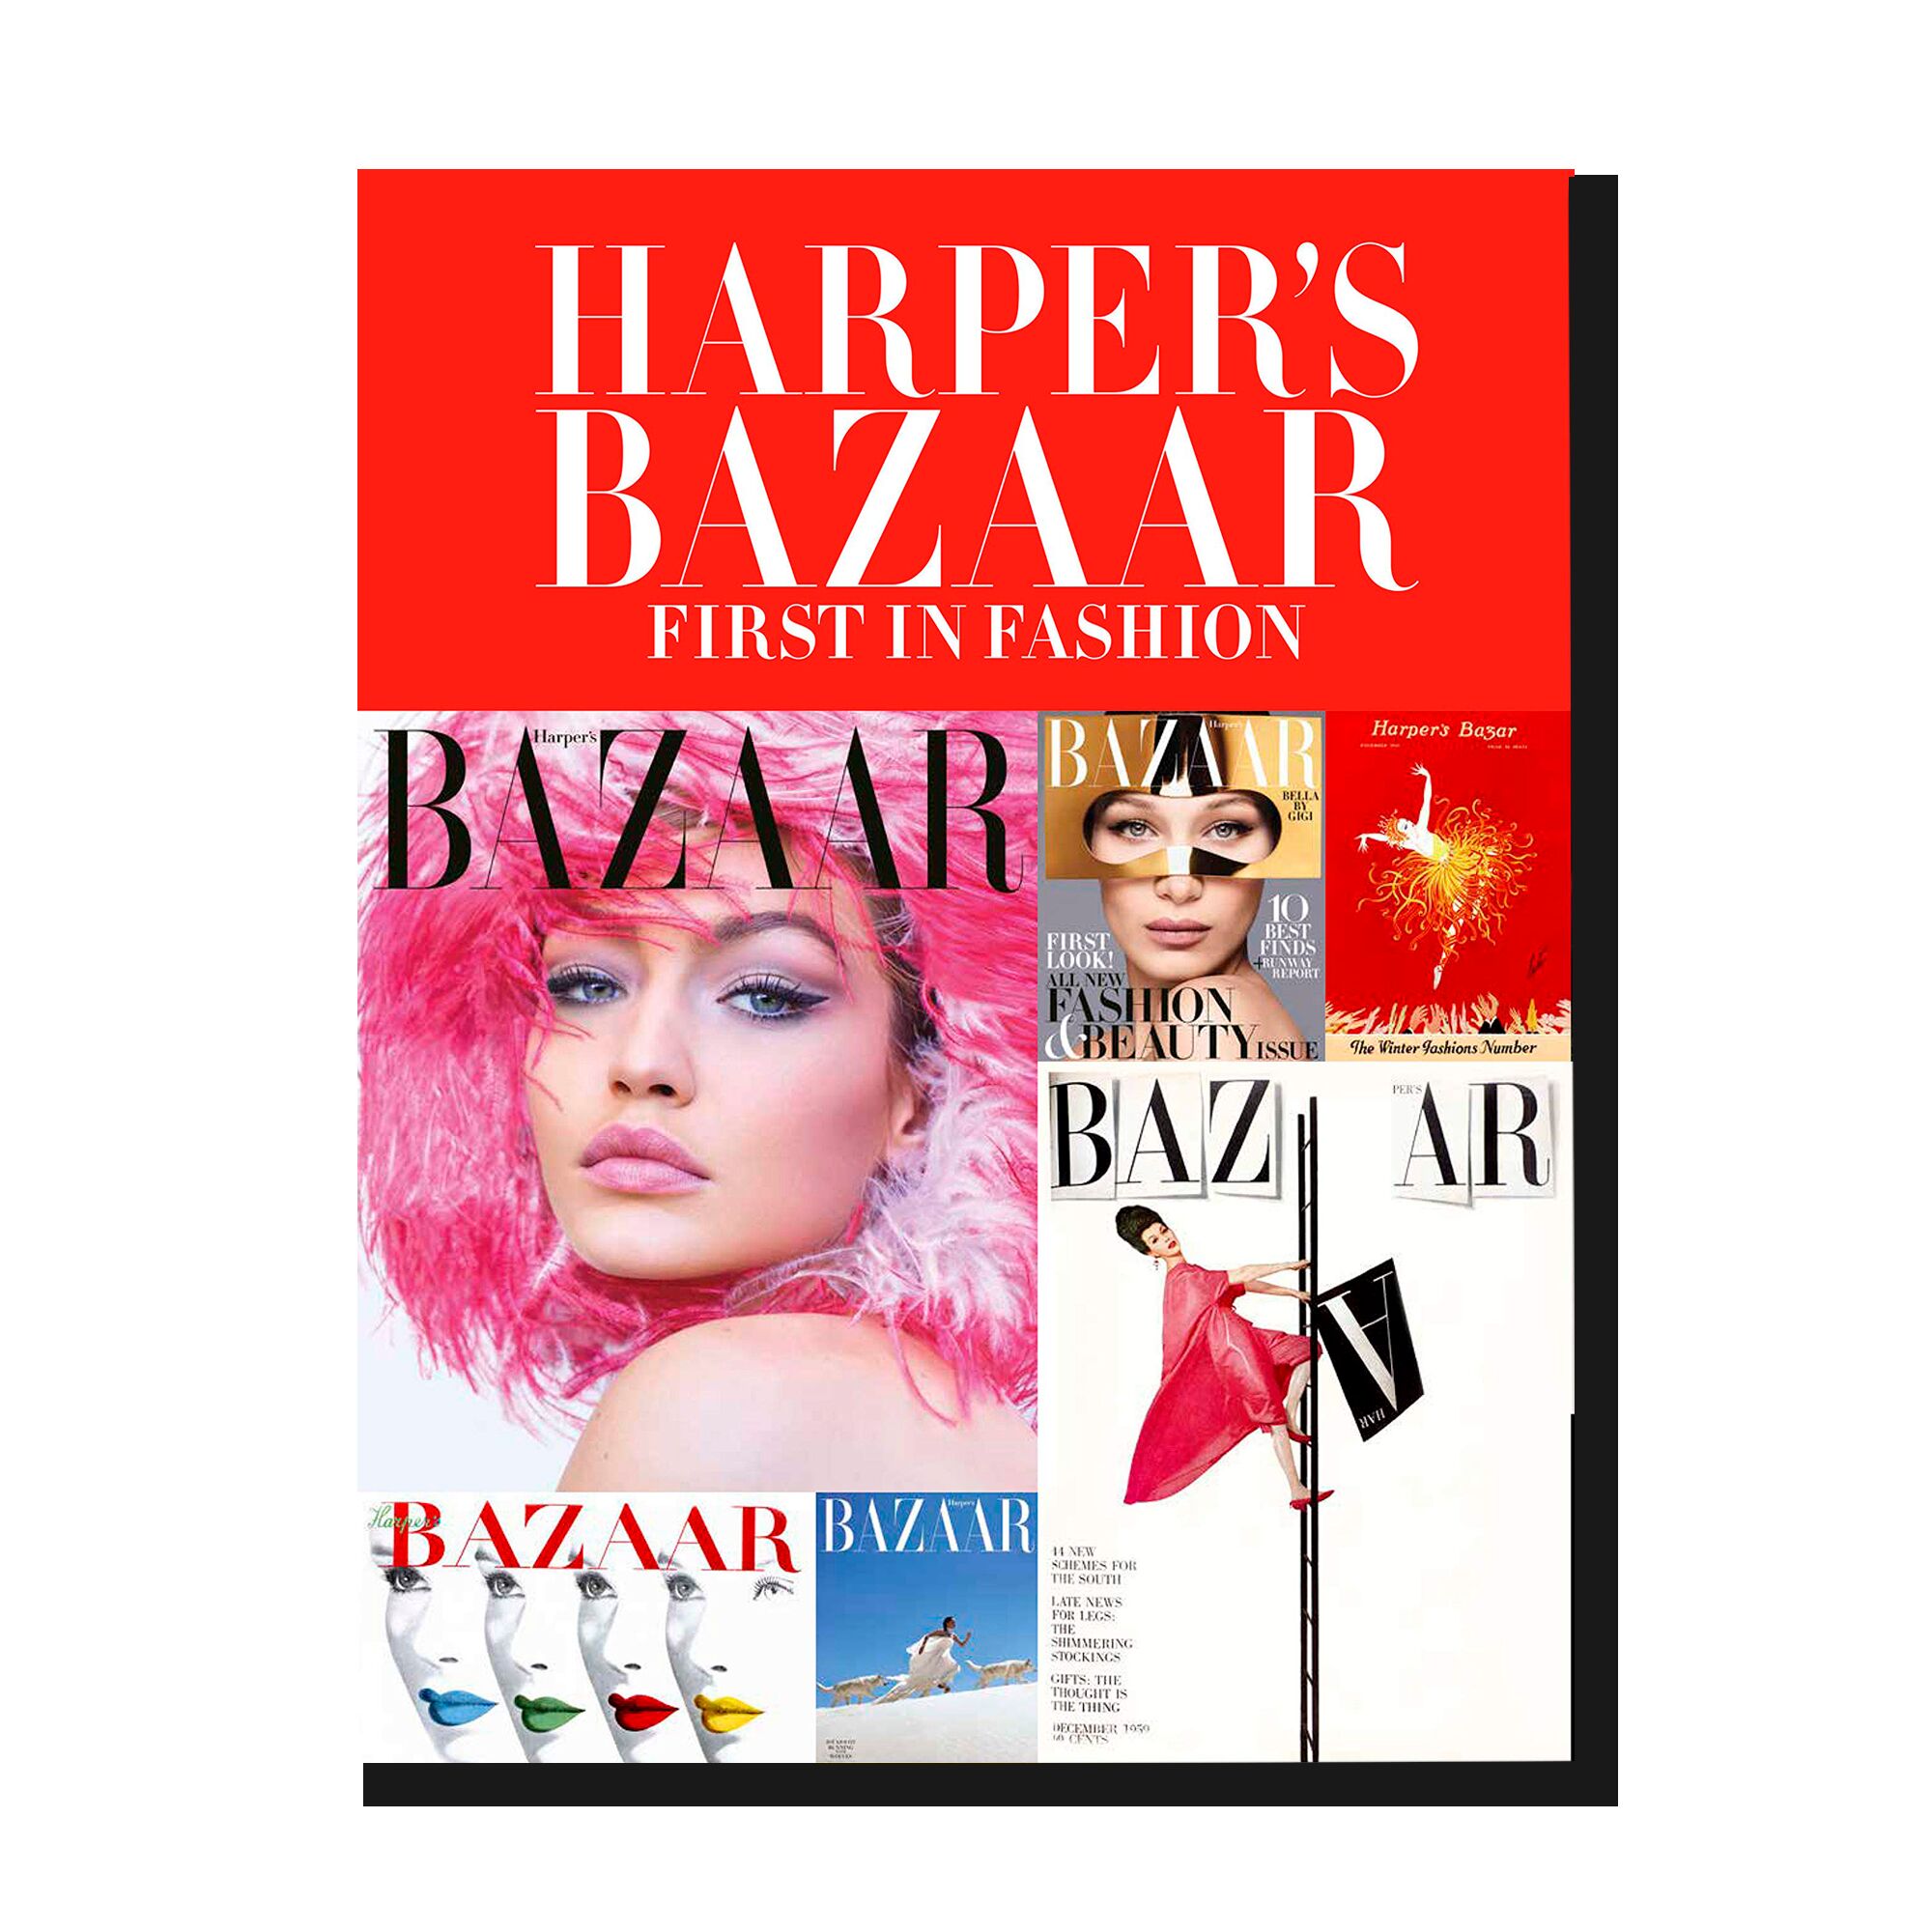 Harper's Bazaar: First in Fashion